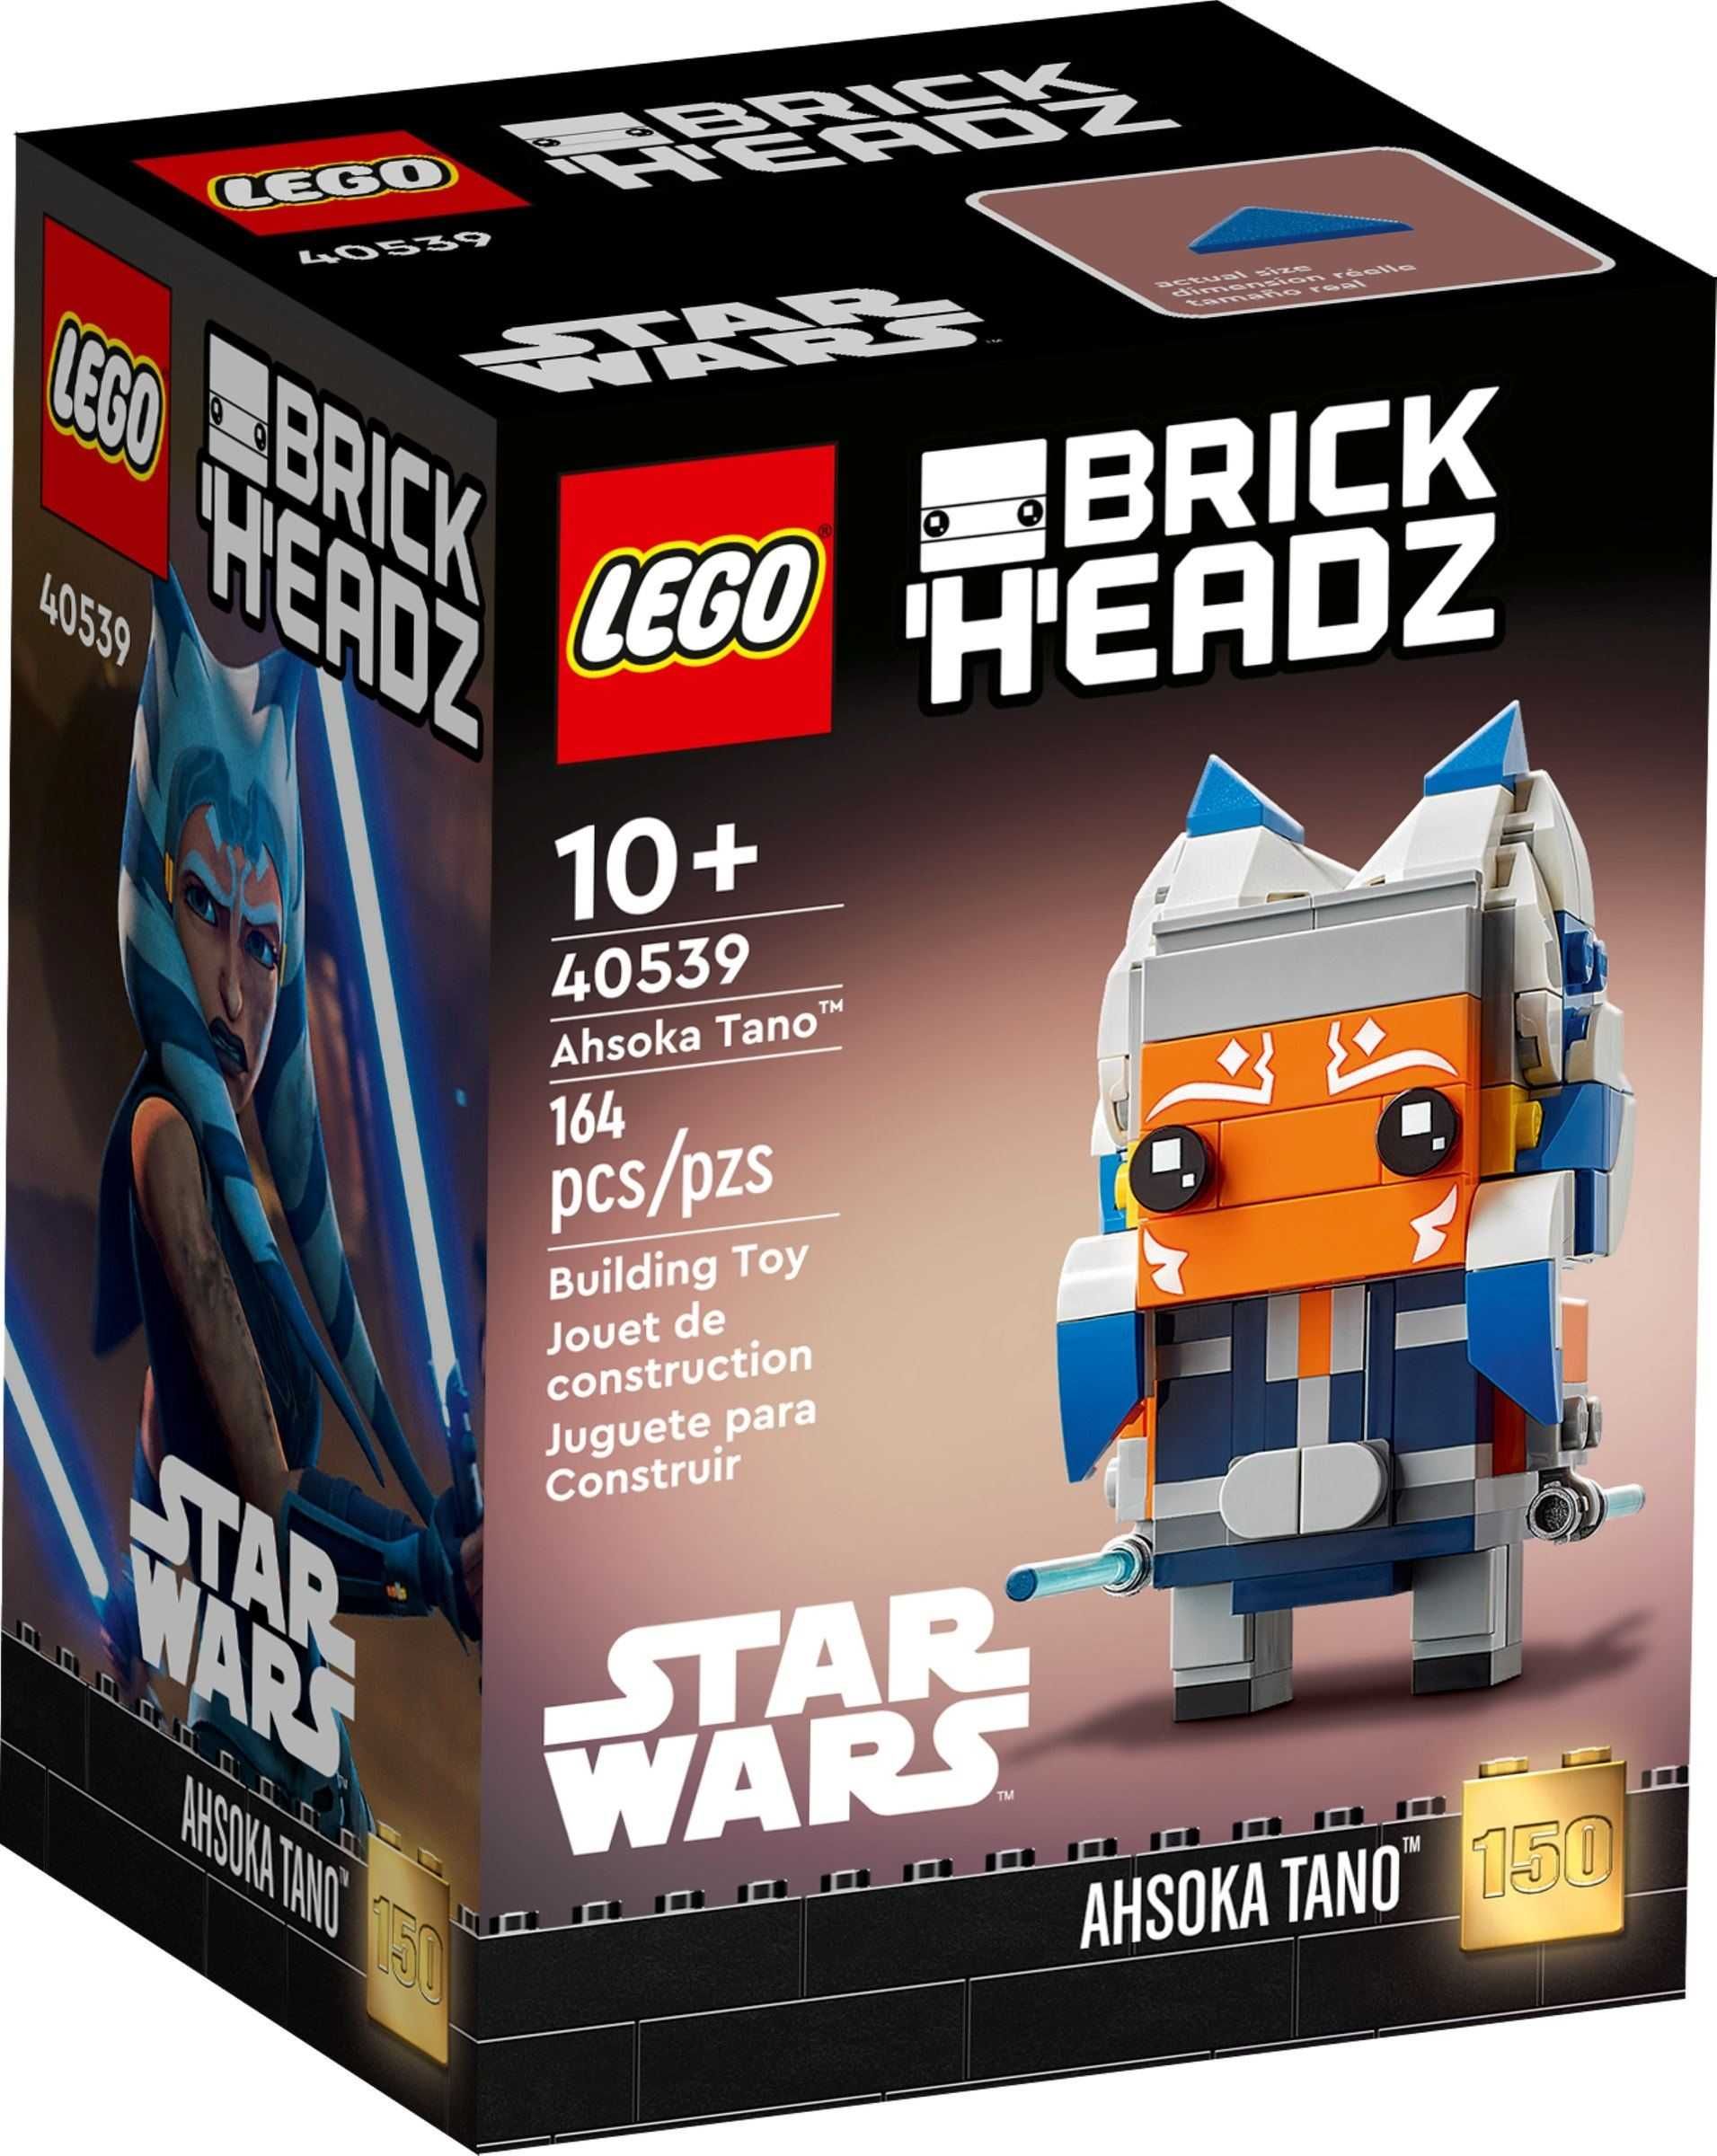 LEGO 40539 Ahsoka Tano Star Wars BrickHeadz